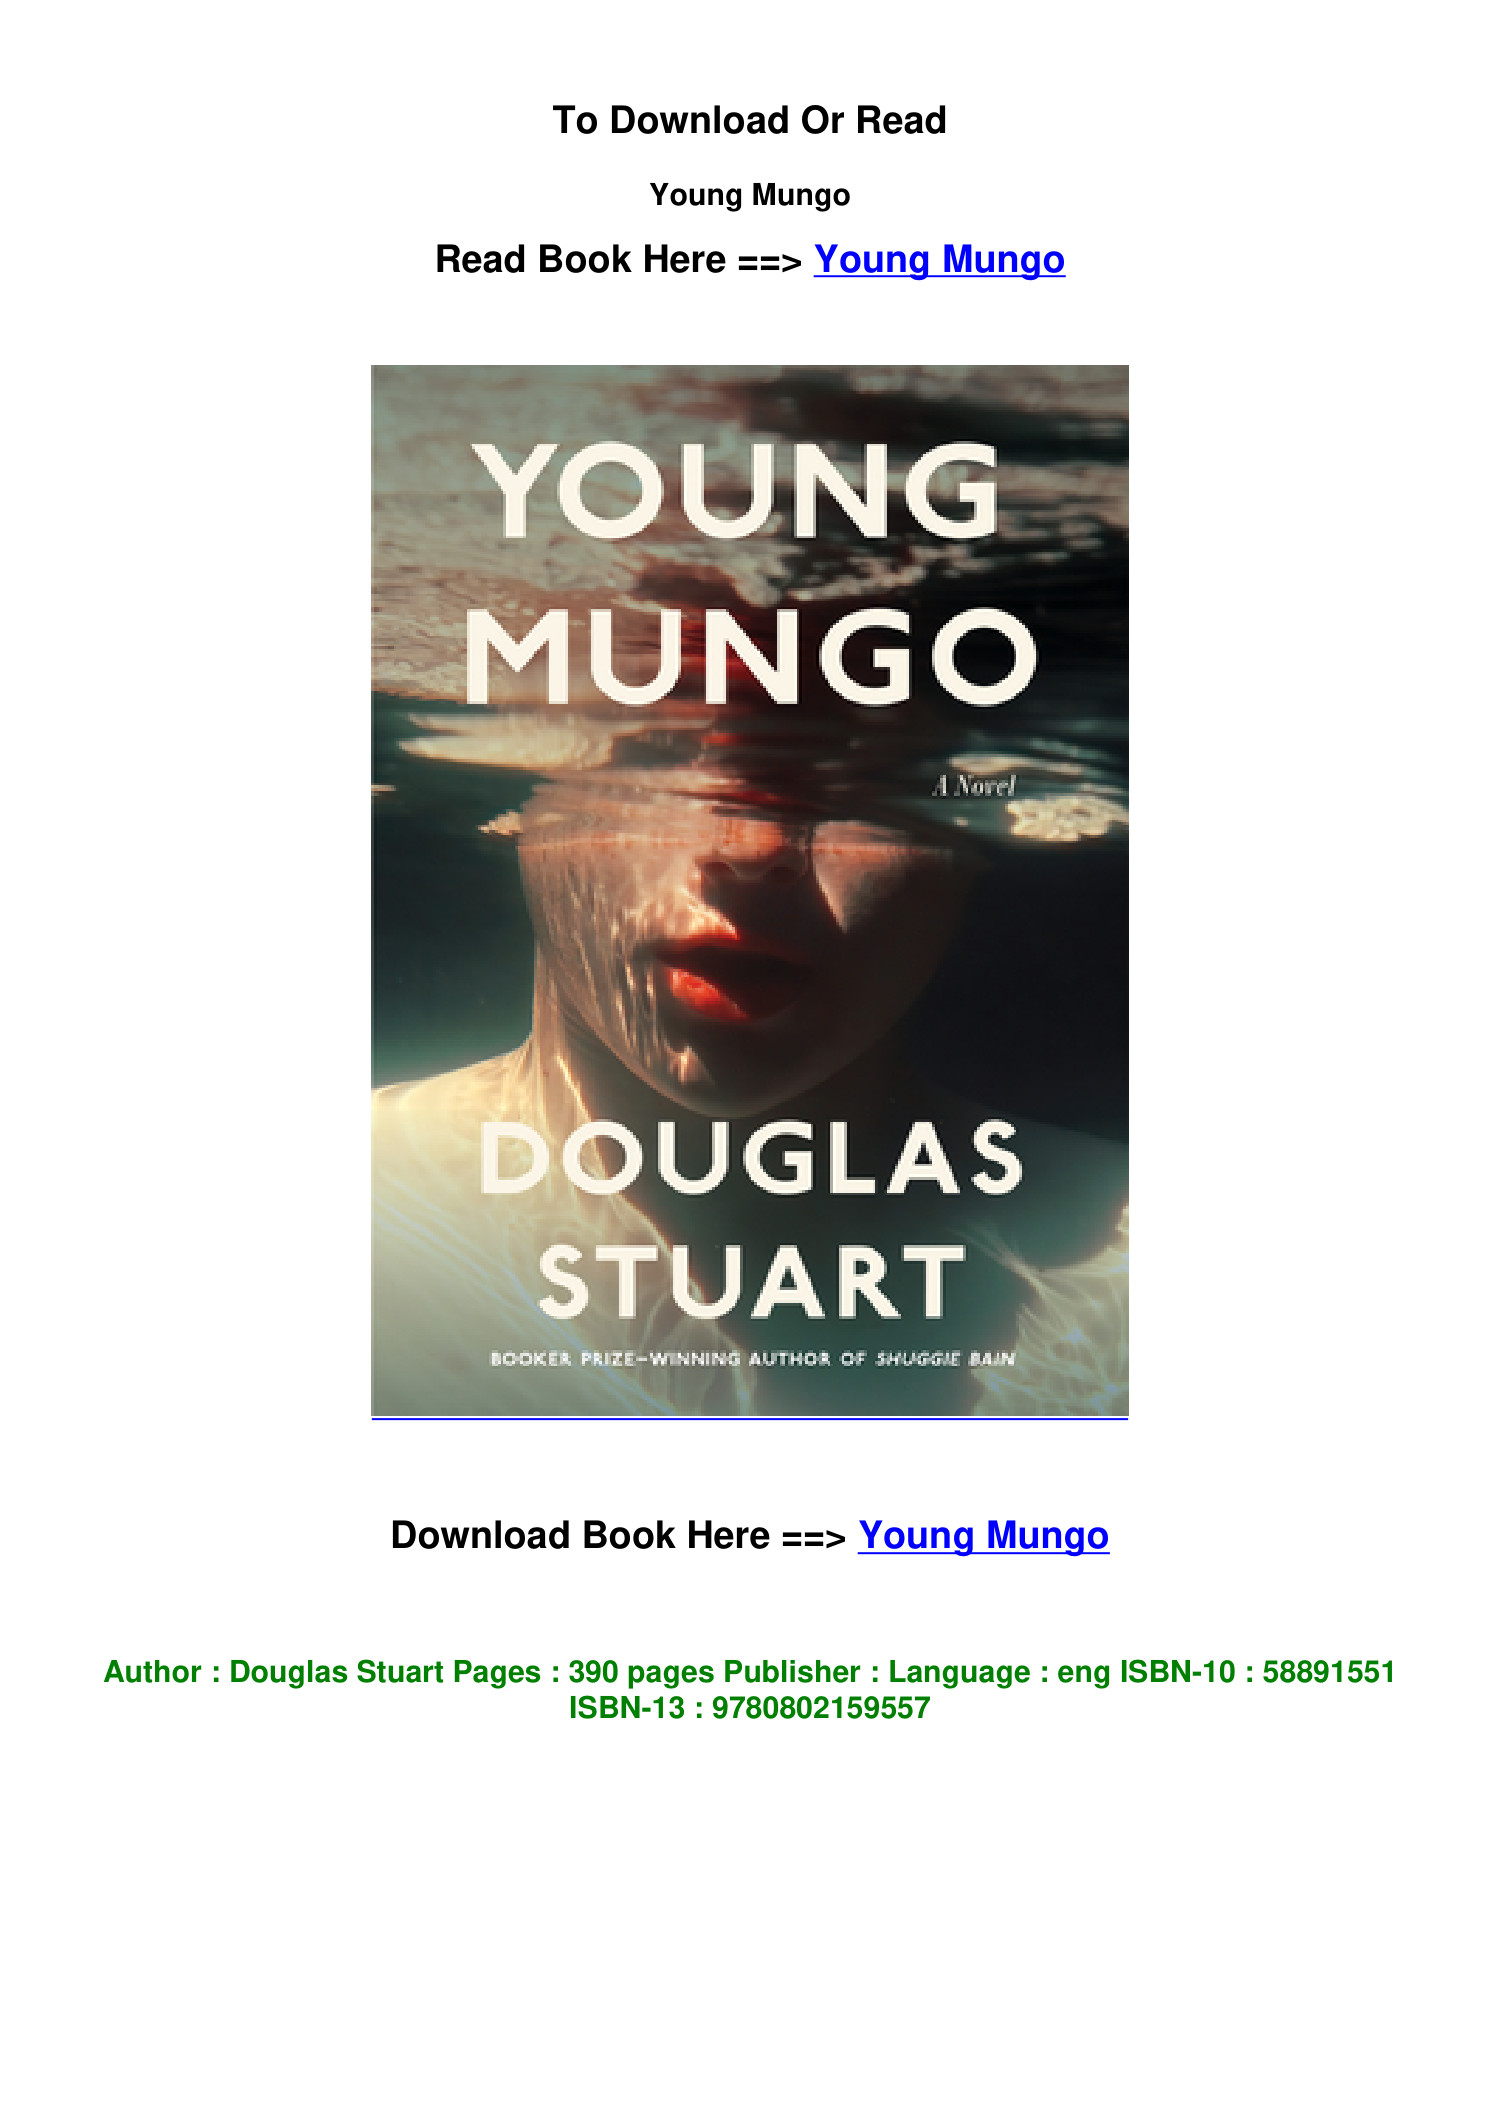 Young Mungo by Douglas Stuart, Paperback